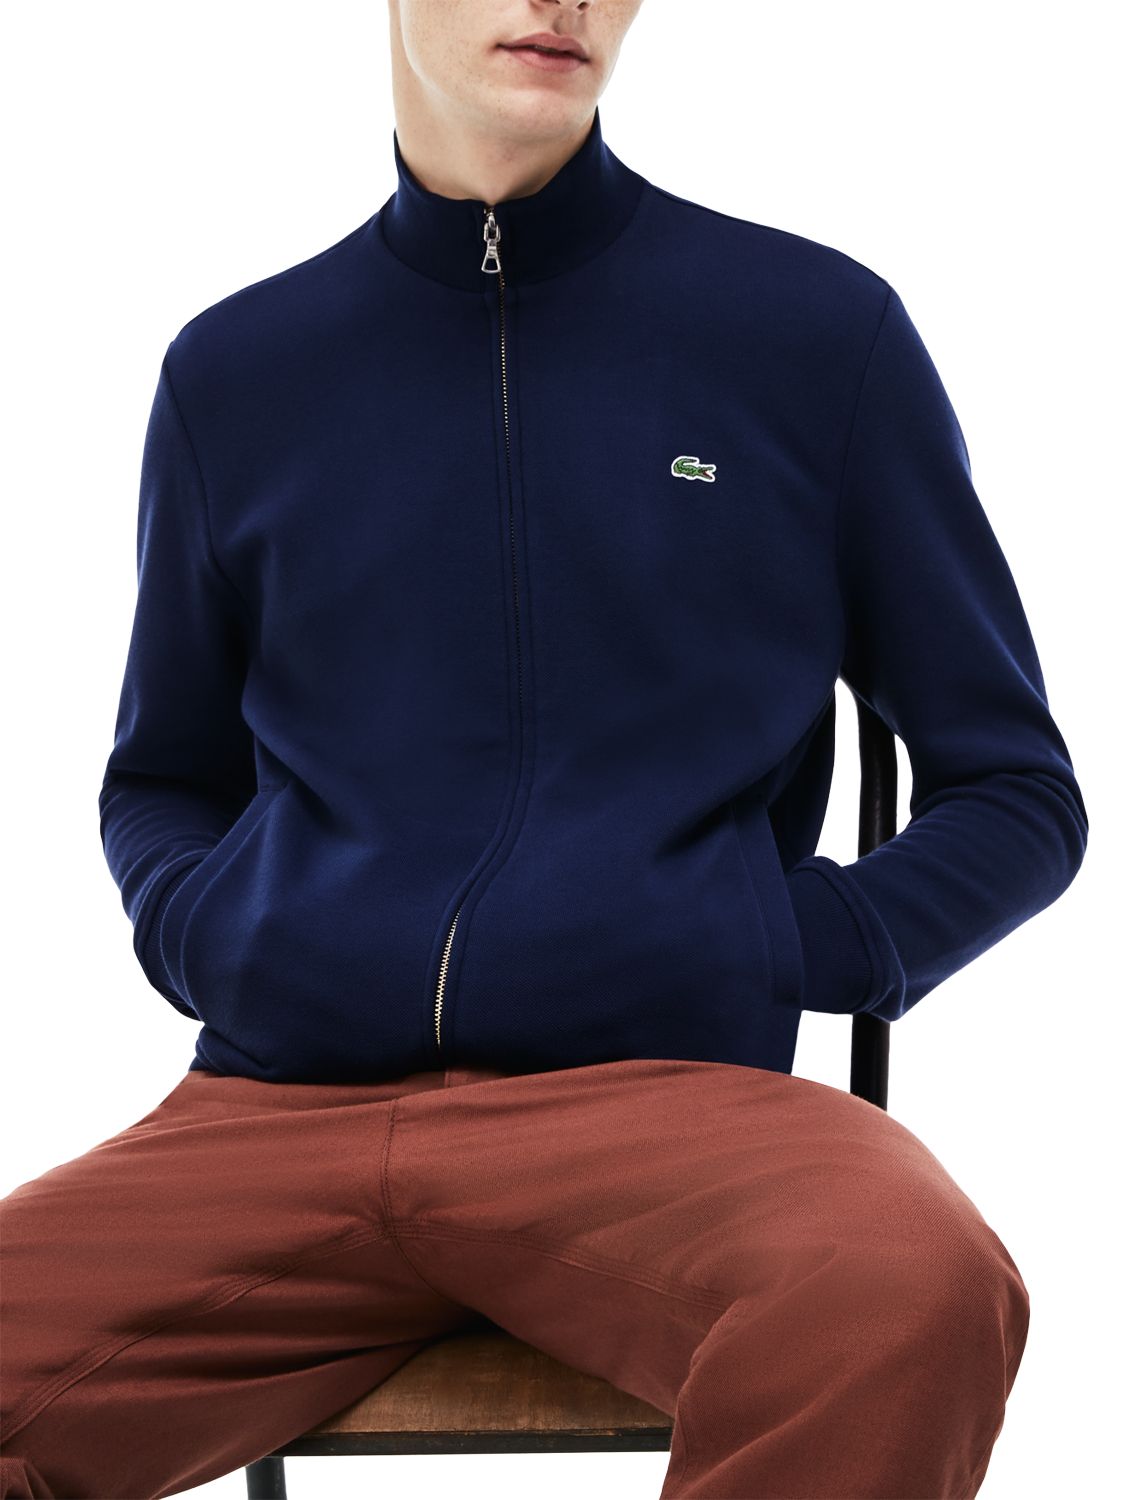 Lacoste Classic Zip Through Sweatshirt, Navy, XL